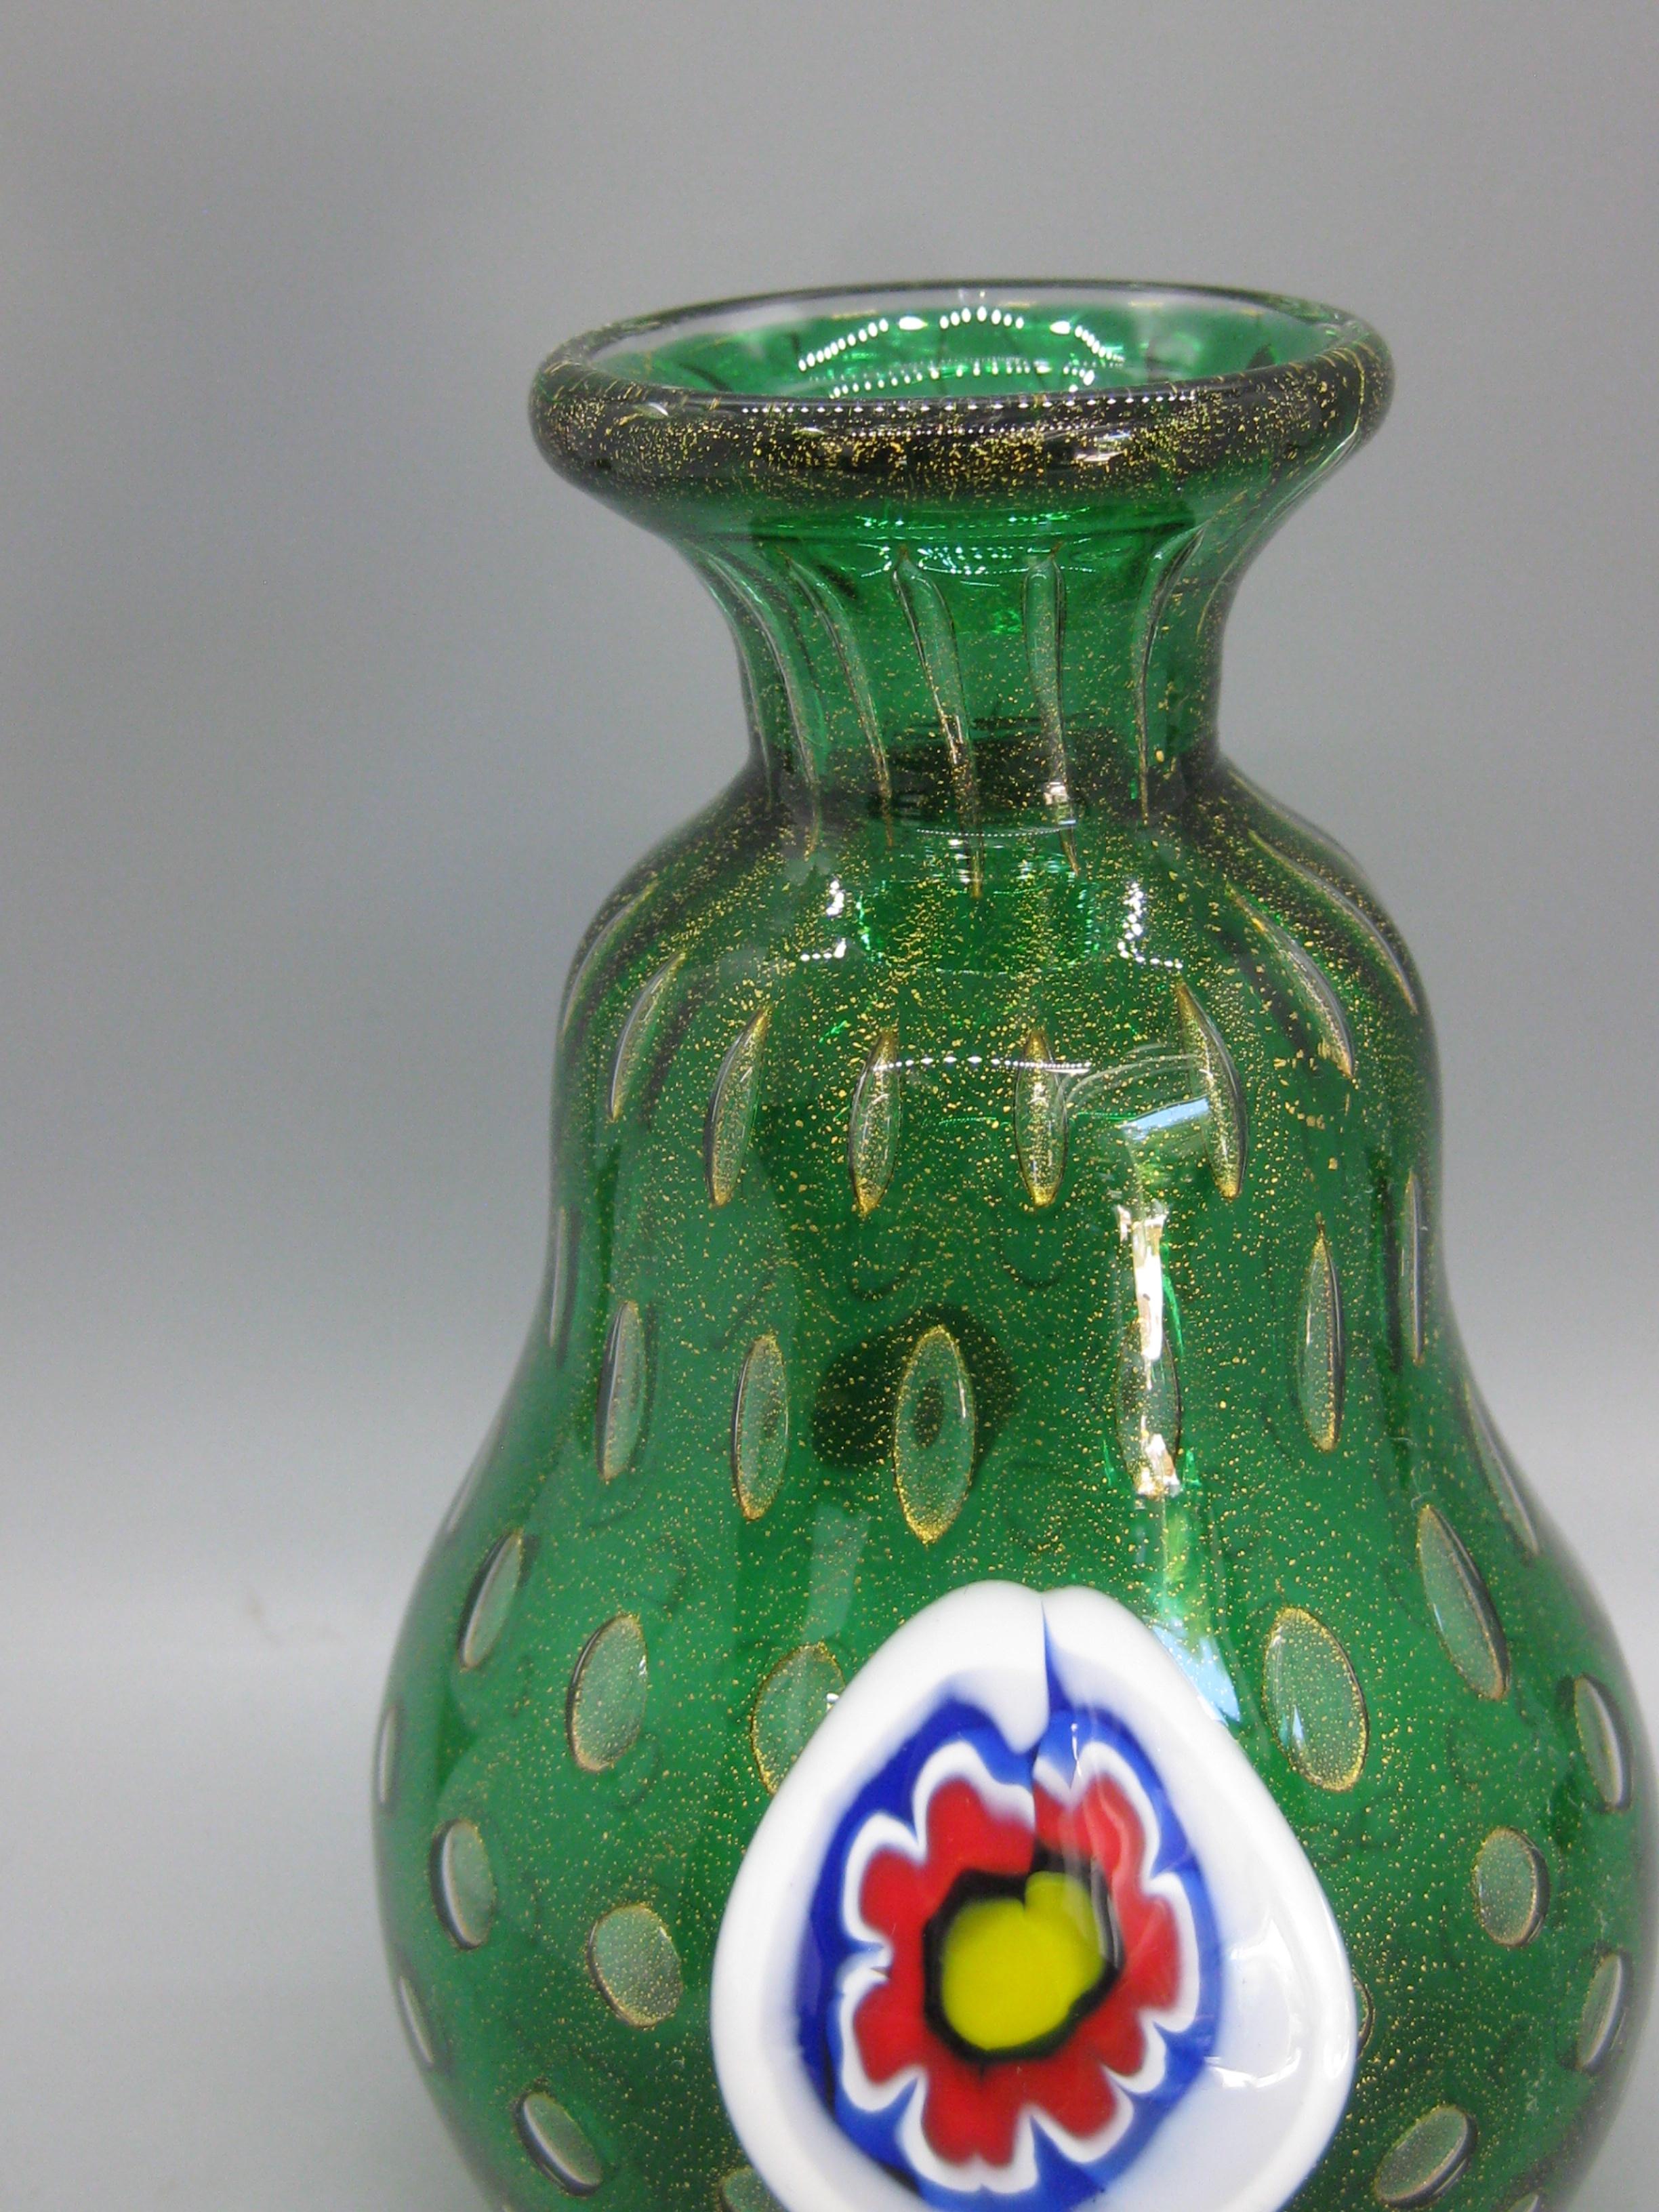 Wunderschöne Vase aus grünem Kunstglas, hergestellt von Mario Bambaro für Murano Glas, ca. 1960er Jahre. Goldflecken in der gesamten Vase. Hat ein Millefiori-Muster auf der Vorderseite. Hat das originale Folienetikett auf der Unterseite. Hergestellt